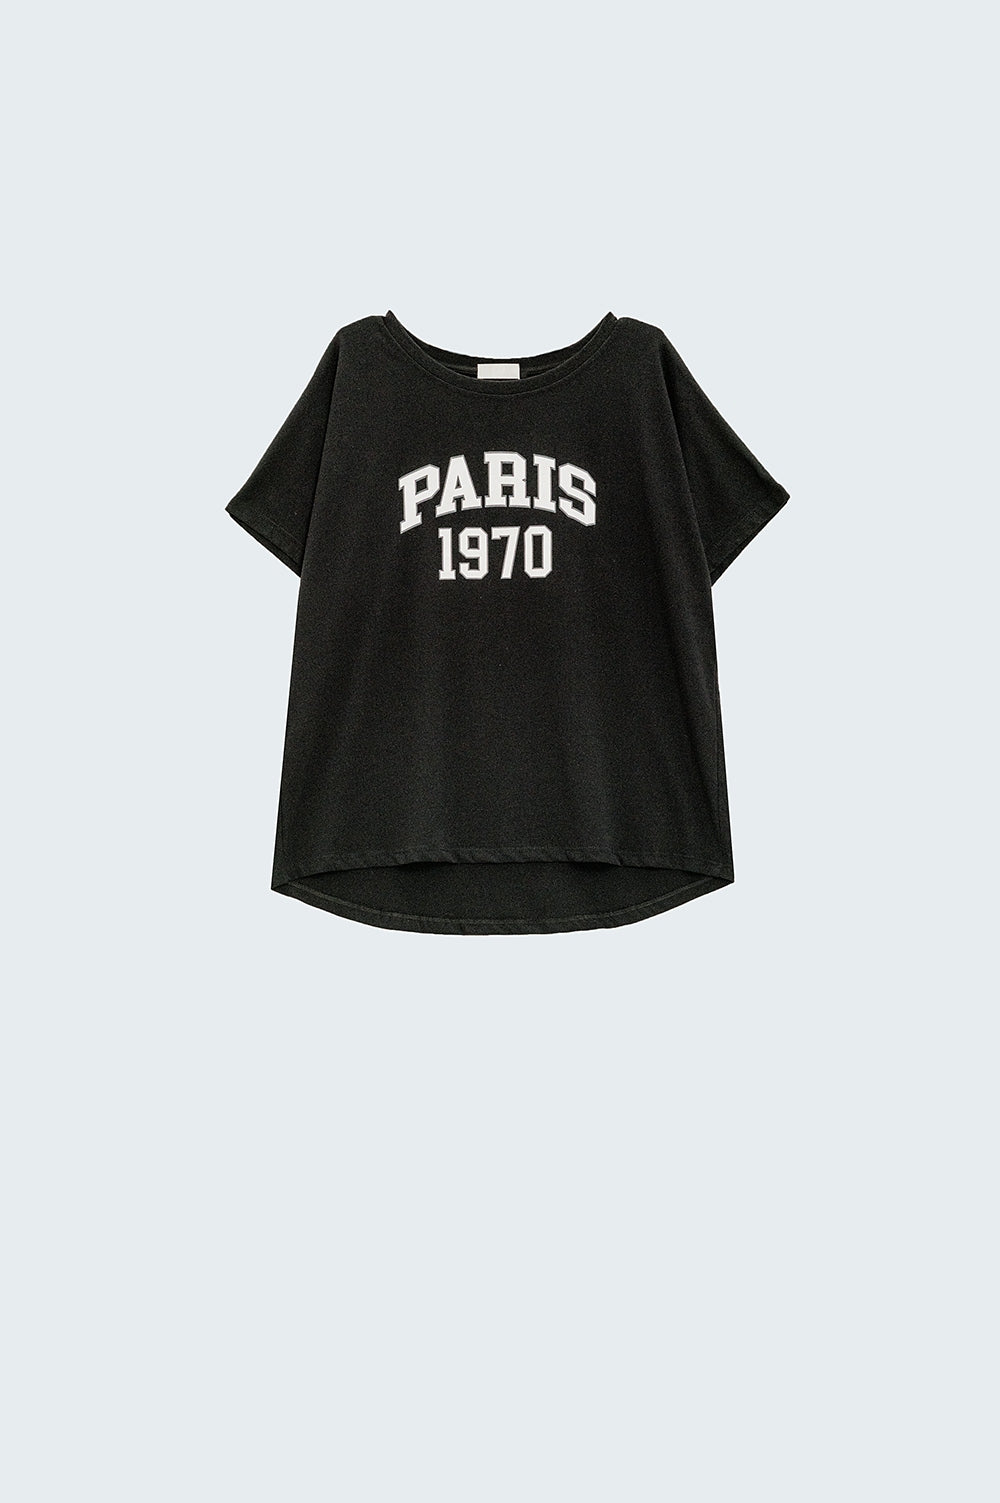 Relaxed zwart t-shirt met opdruk paris 1970 in wit